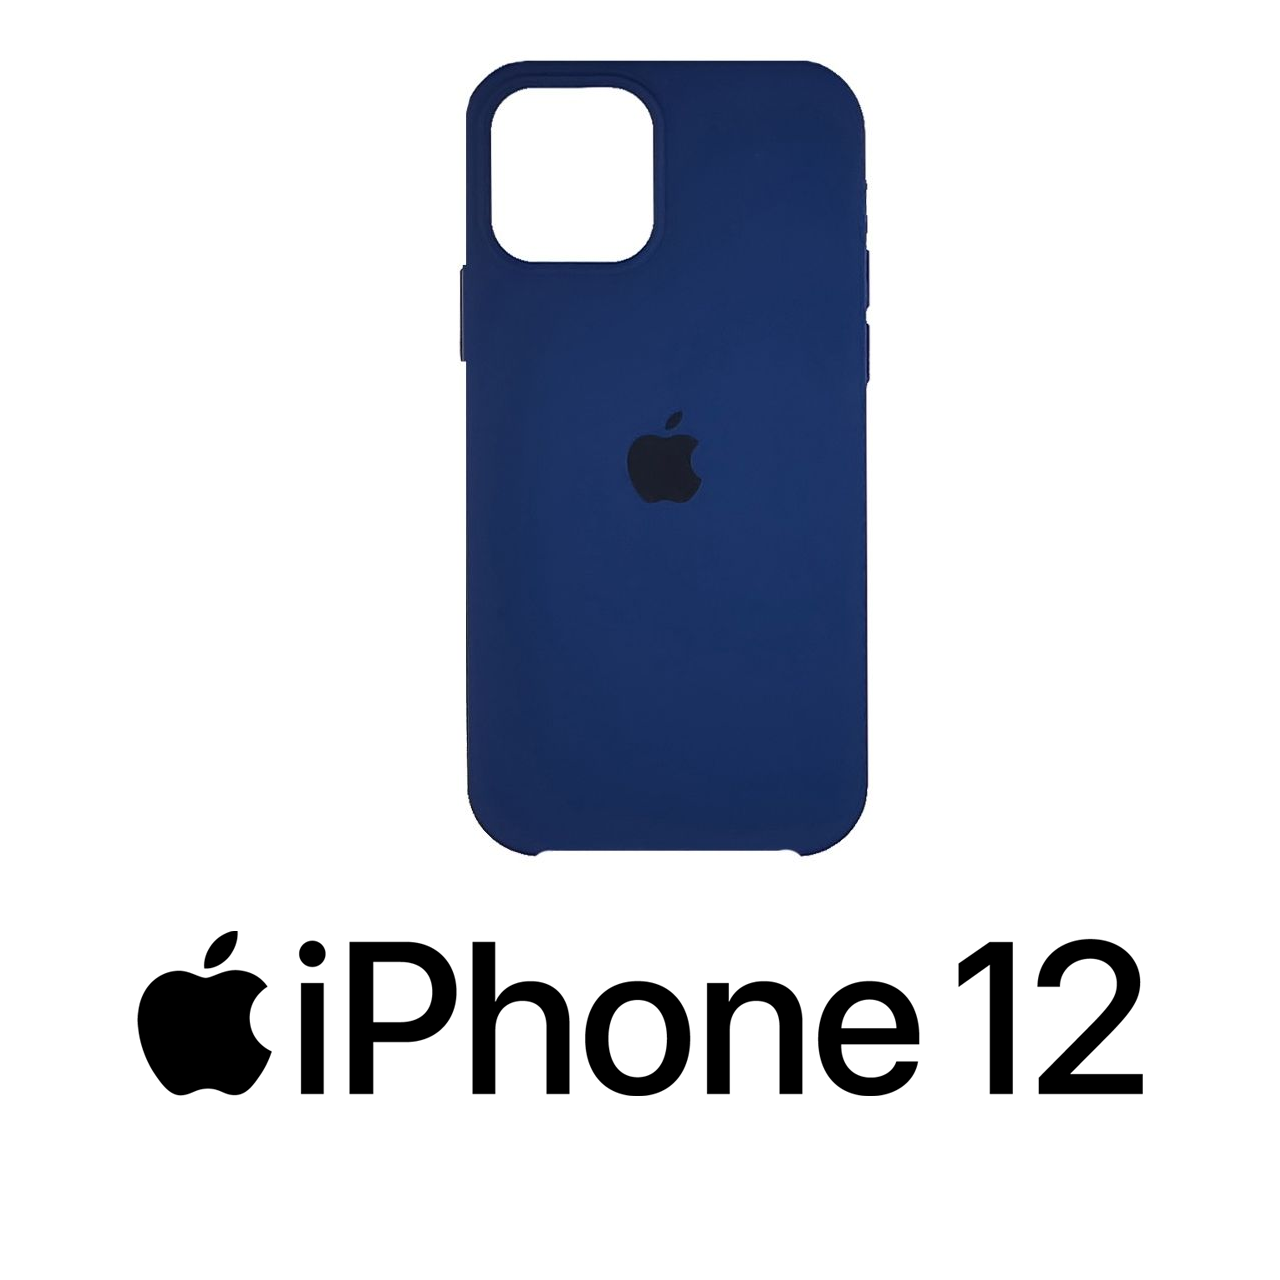 

Чехол для iPhone 12/12 Pro blue cobalt (синий), силиконовый кейс на айфон 12/12 про